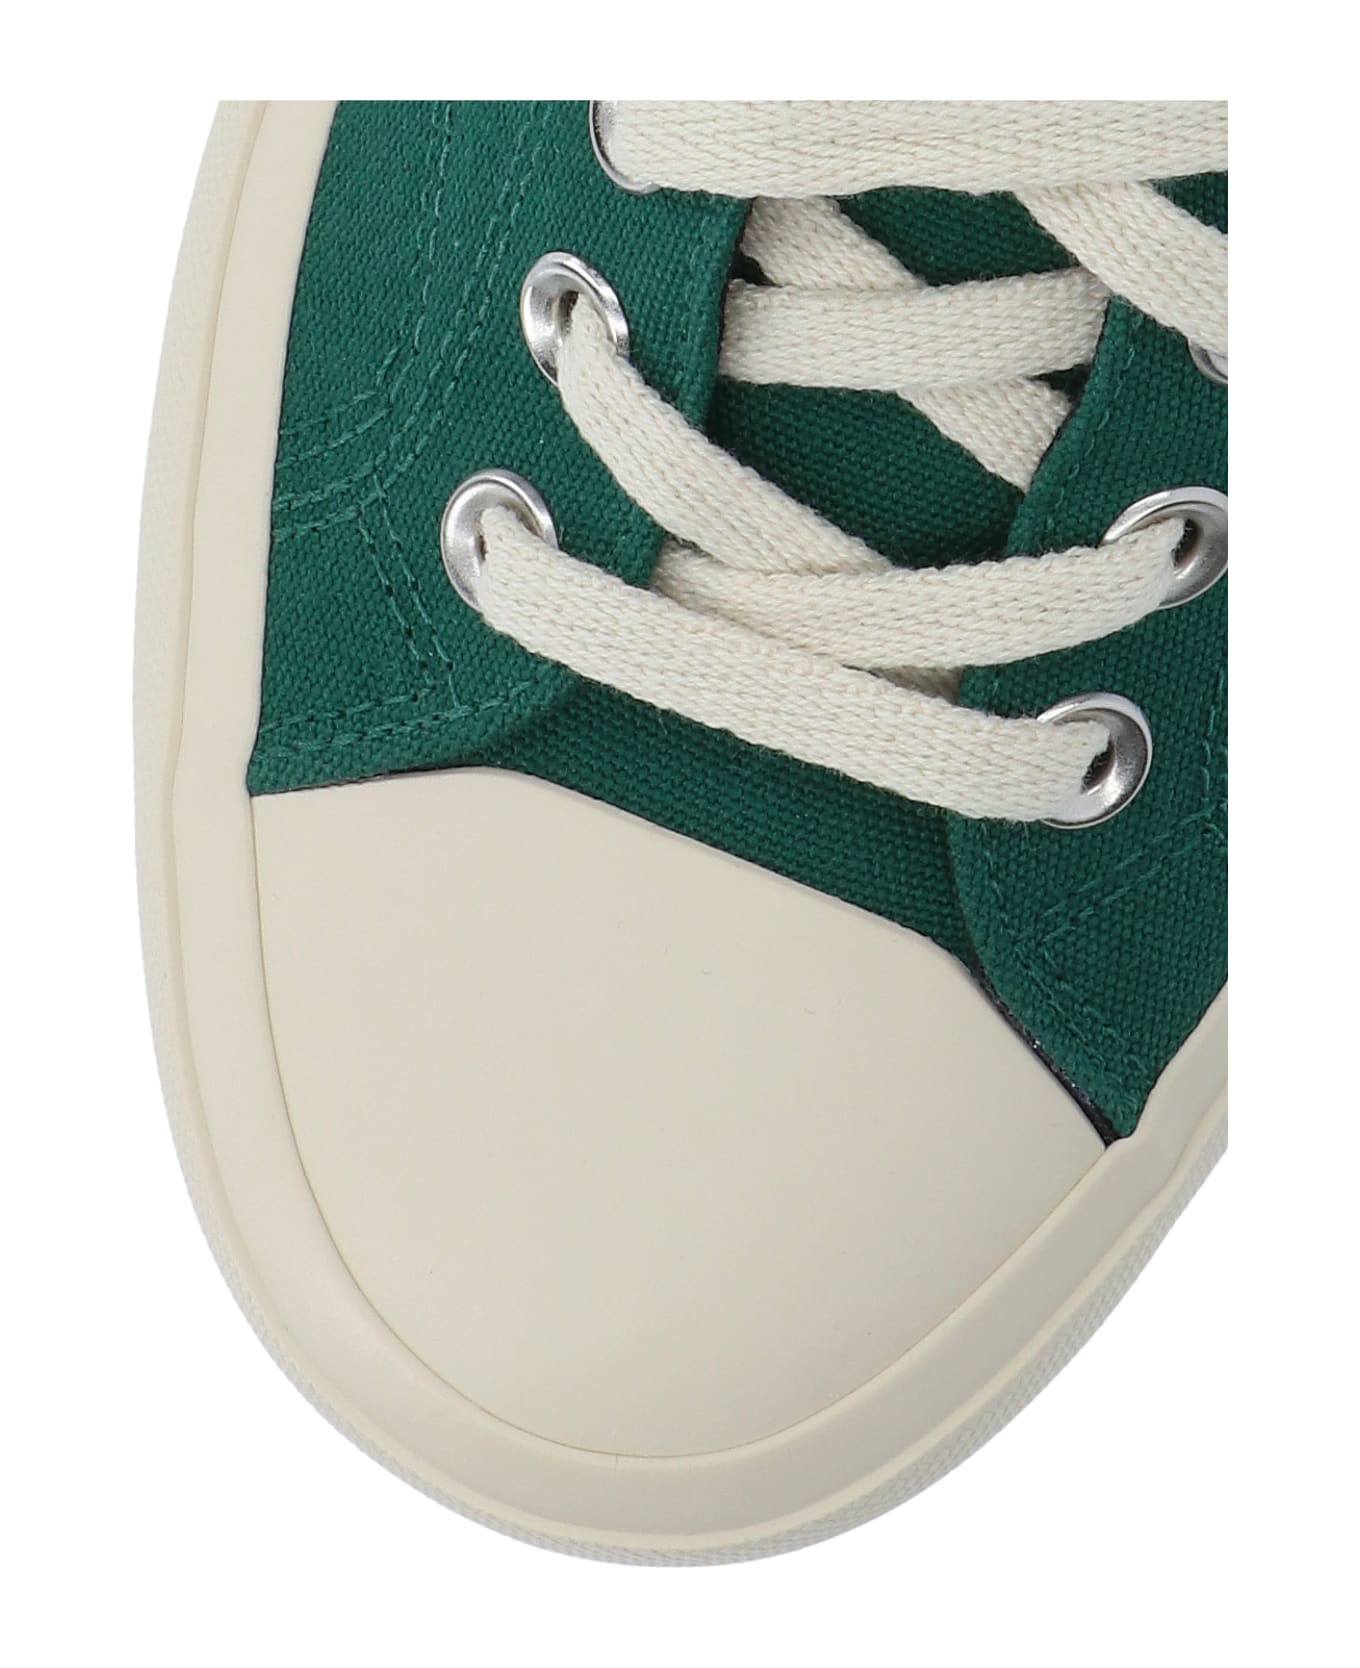 Veja Sneakers - Green